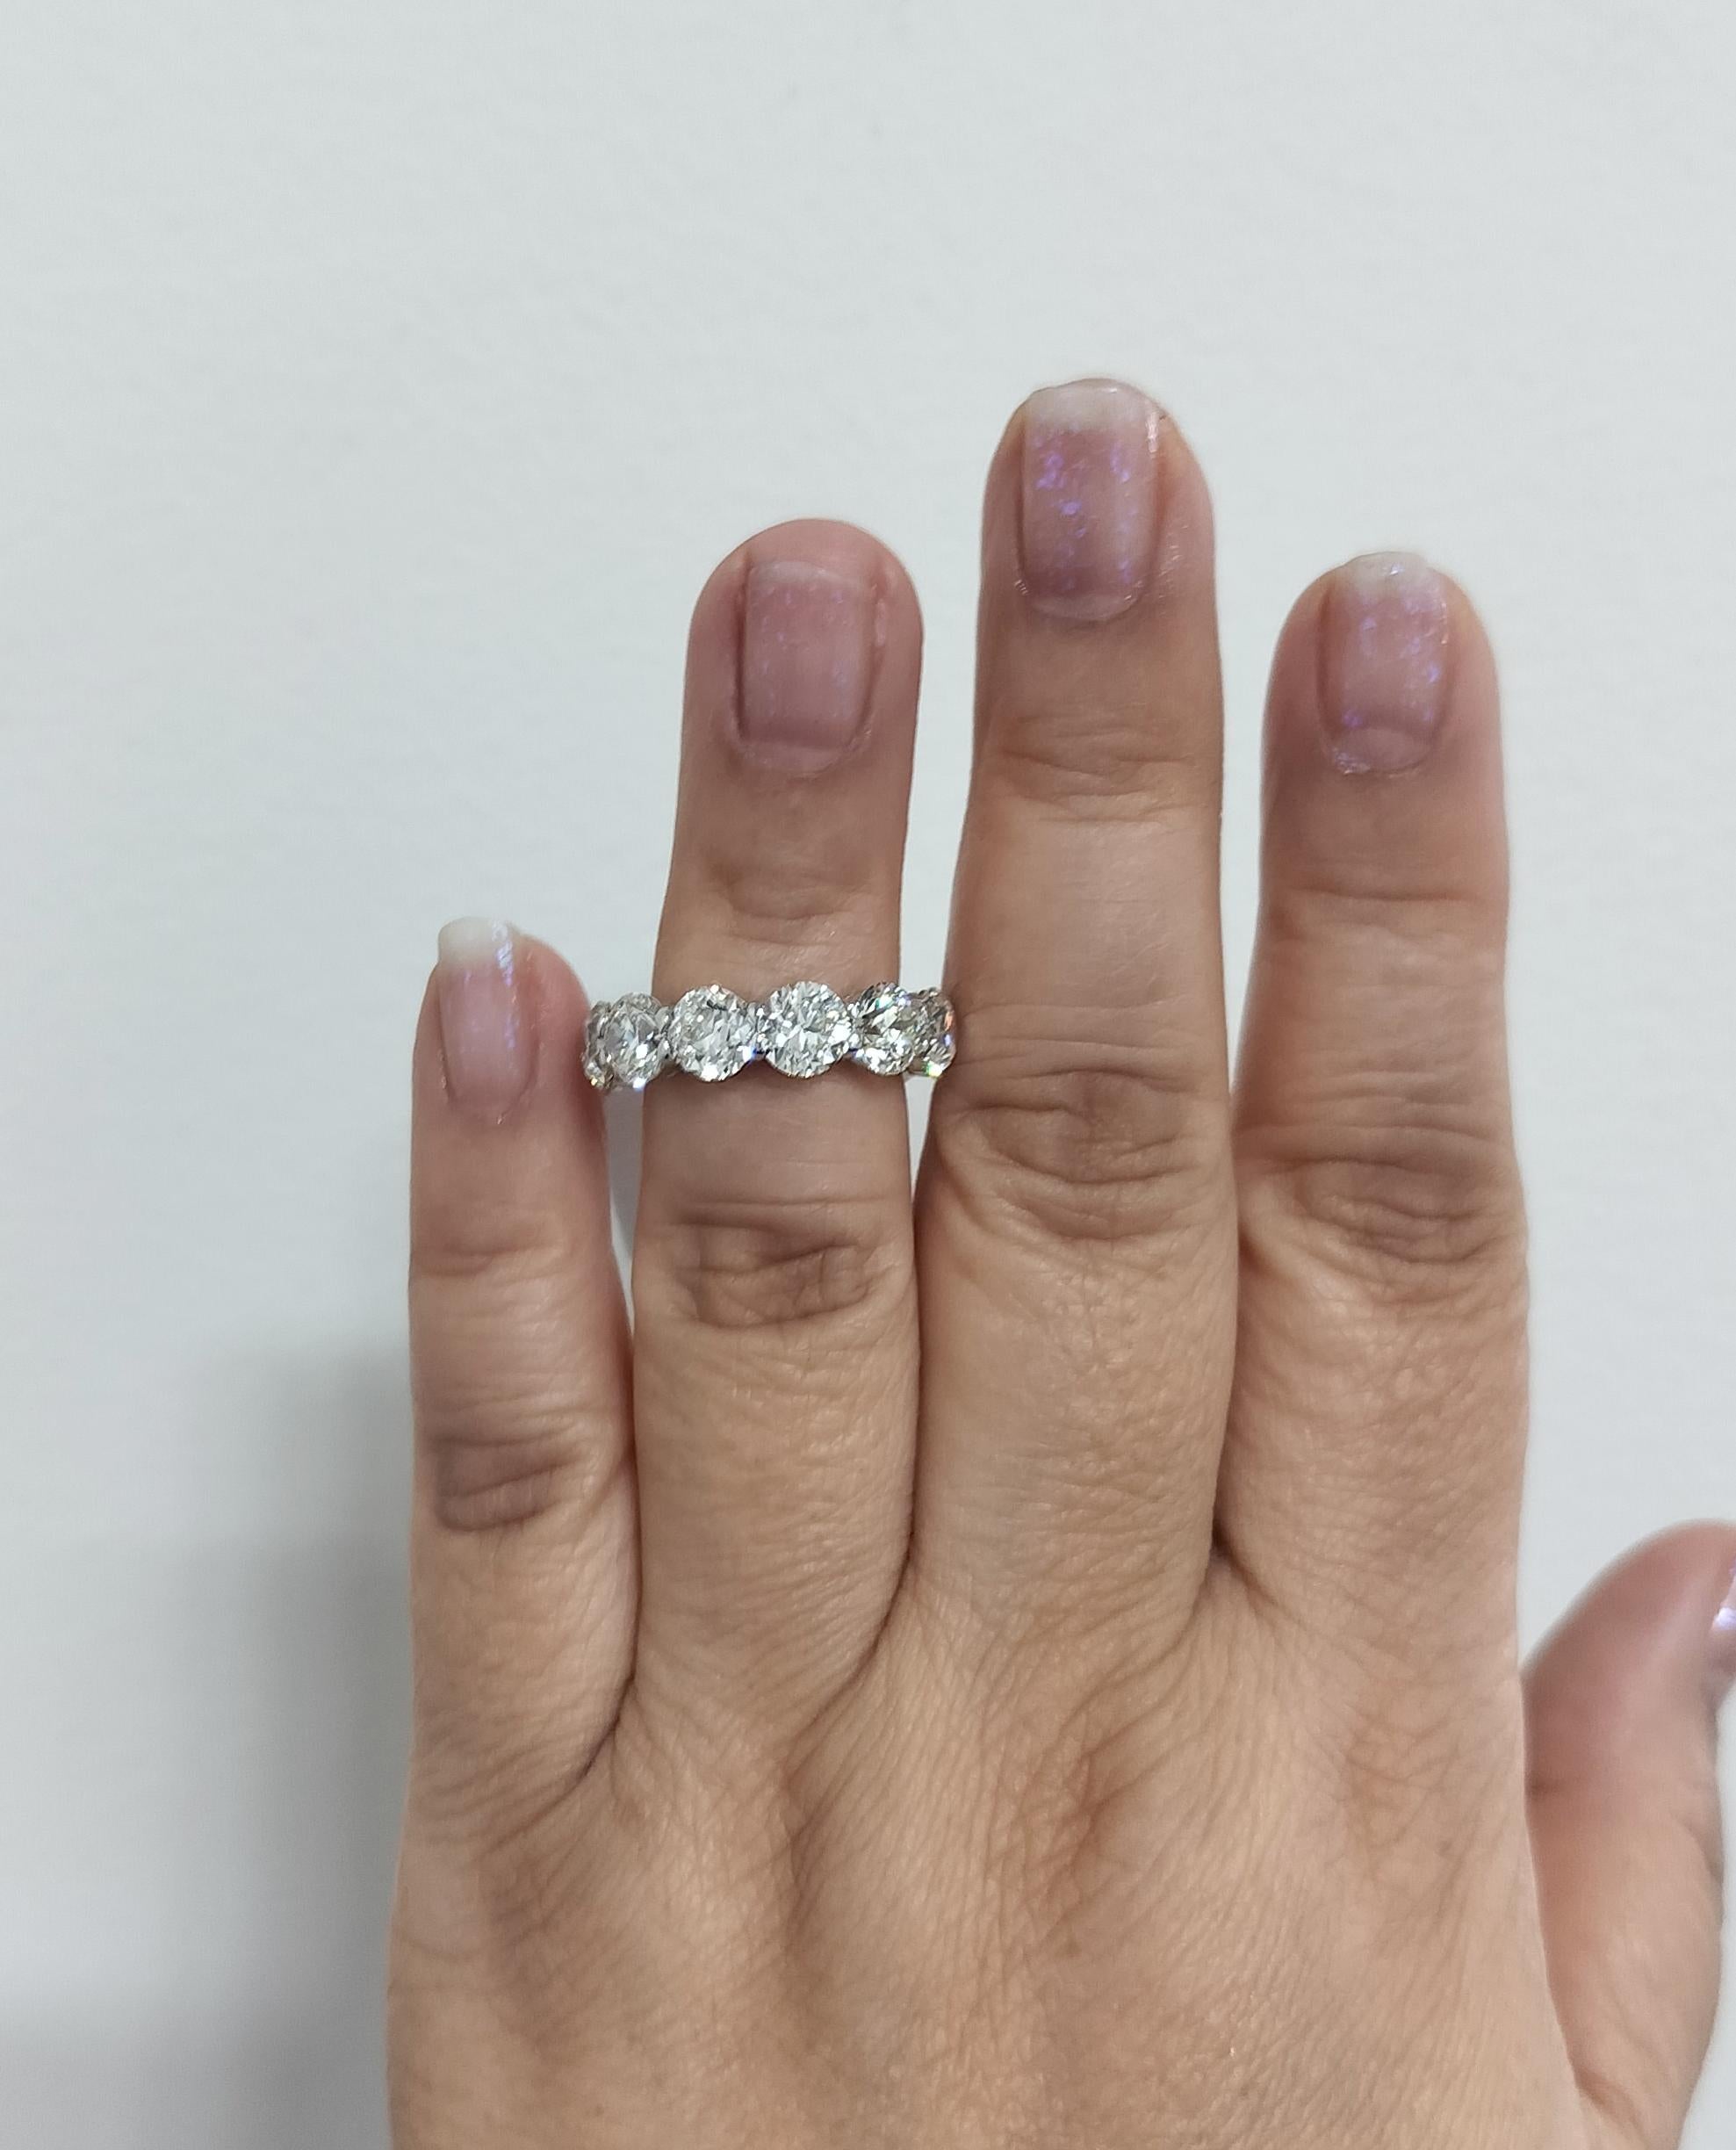 Wunderschöne 10,85 ct. weiße Diamanten rund JK Farbe VS1-SI1 Klarheit.  Insgesamt 12 Steine.  Handgefertigt aus 18 Karat Weißgold.  Ring Größe 6,5.  Alle Steine haben GIA-Zertifikate.